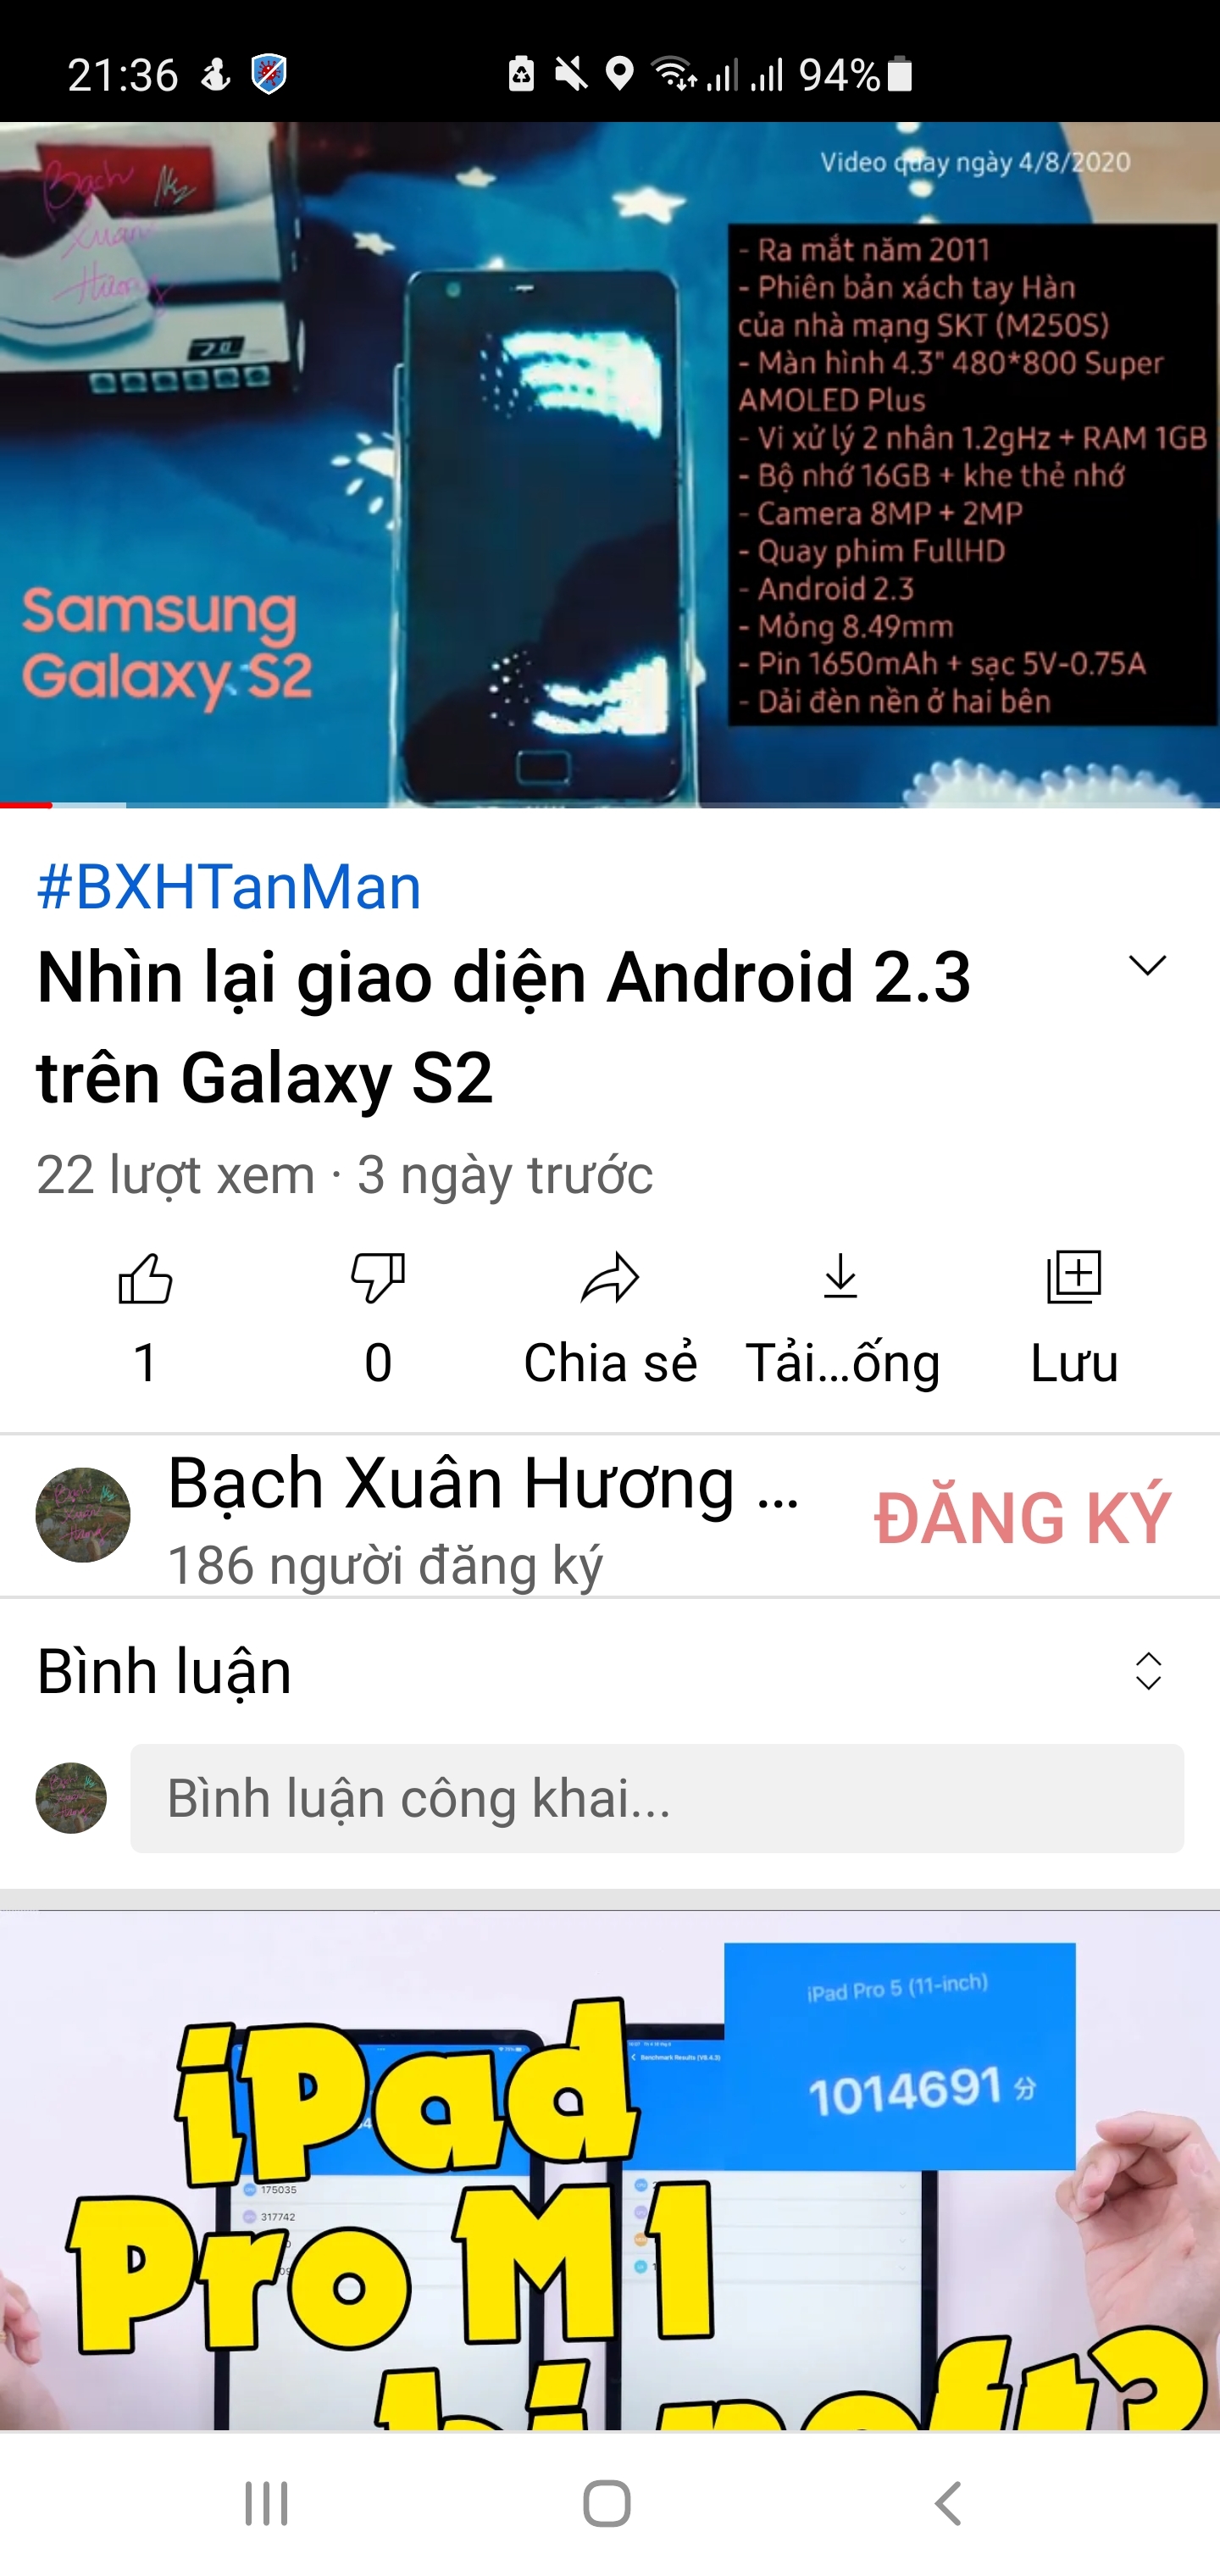 Nhìn lại giao diện Android 2.3 trên Galaxy S2: